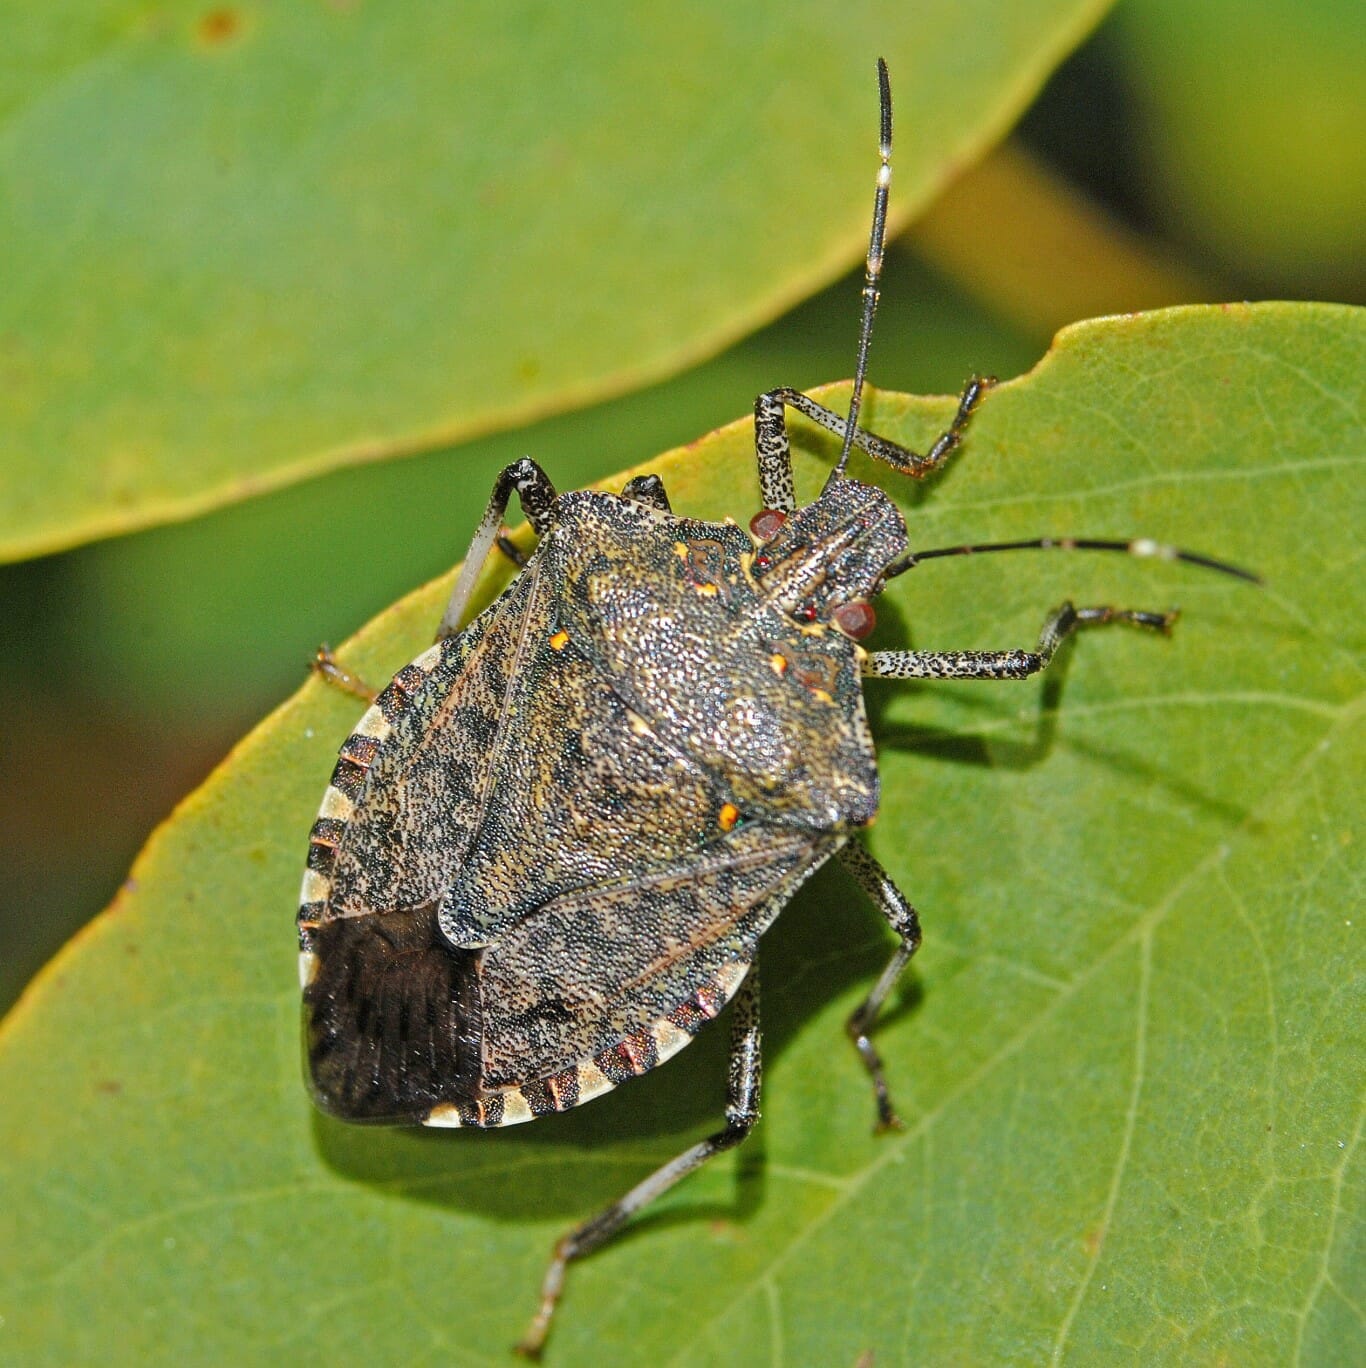 Stink Bug sitting on green leaf